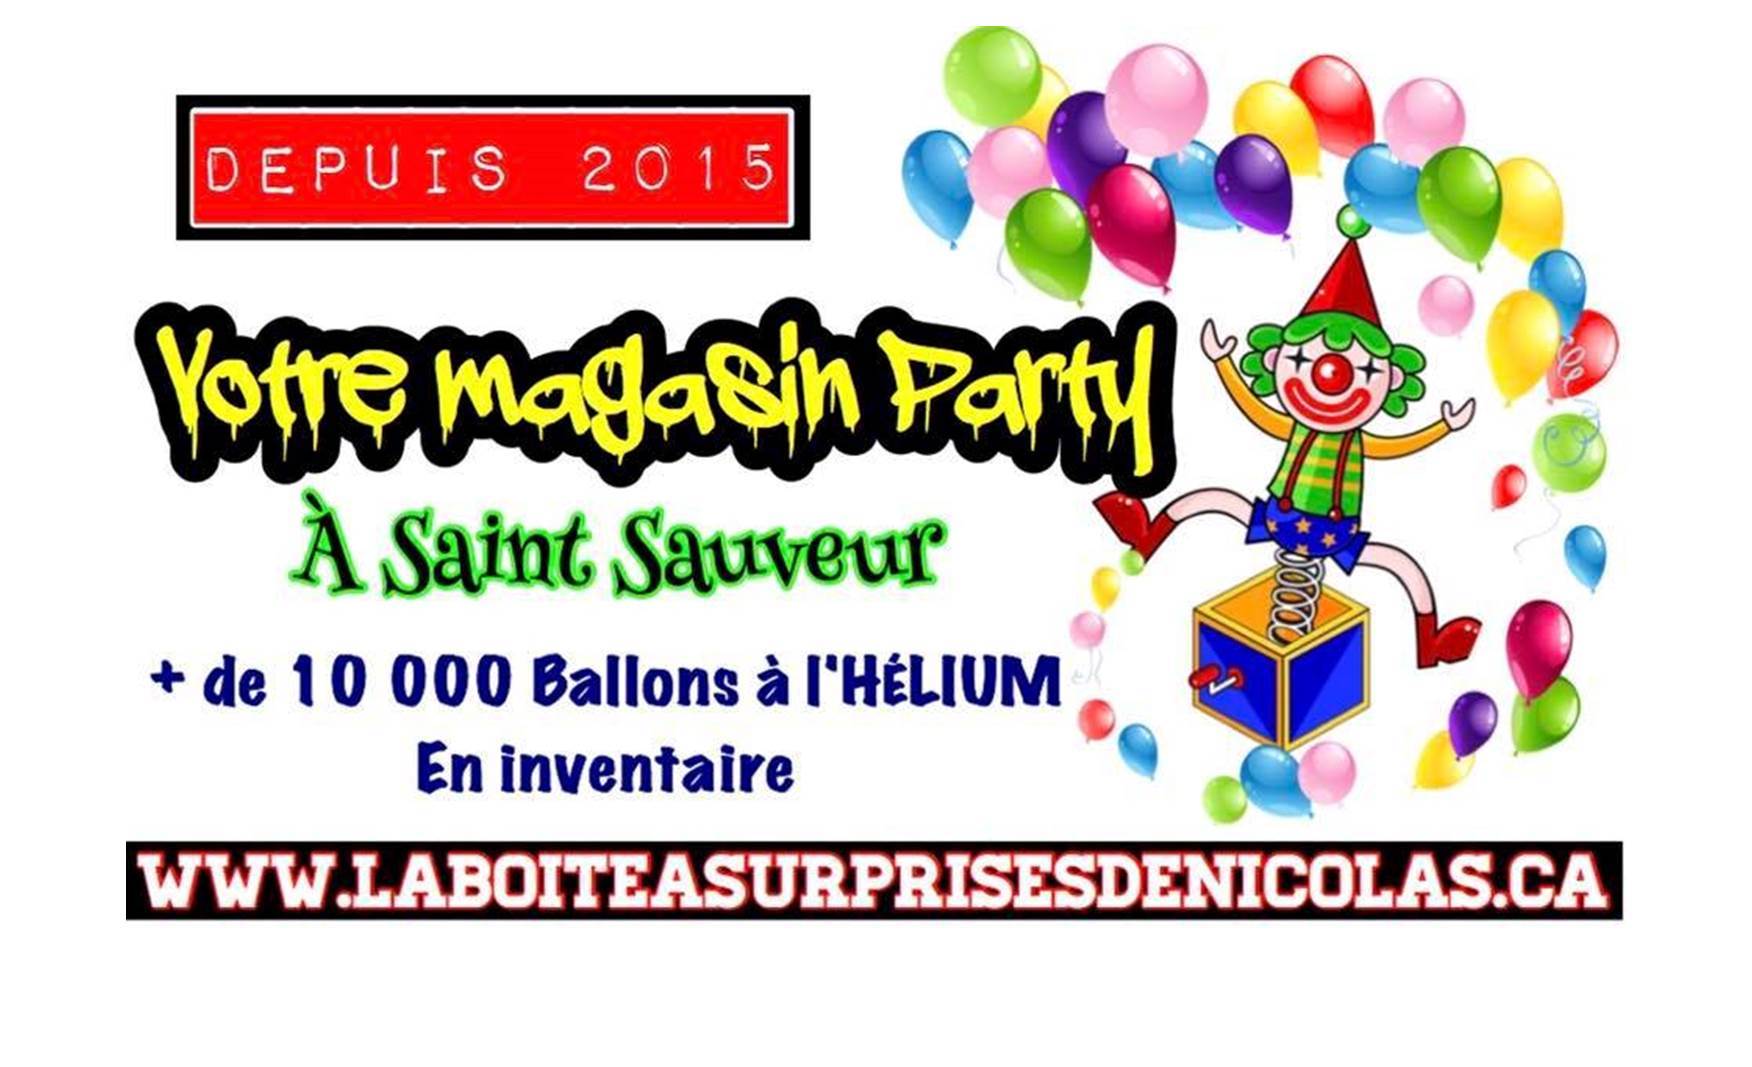 Ballon Helium Pat Patrouille Stella et Everest - 25 pouces